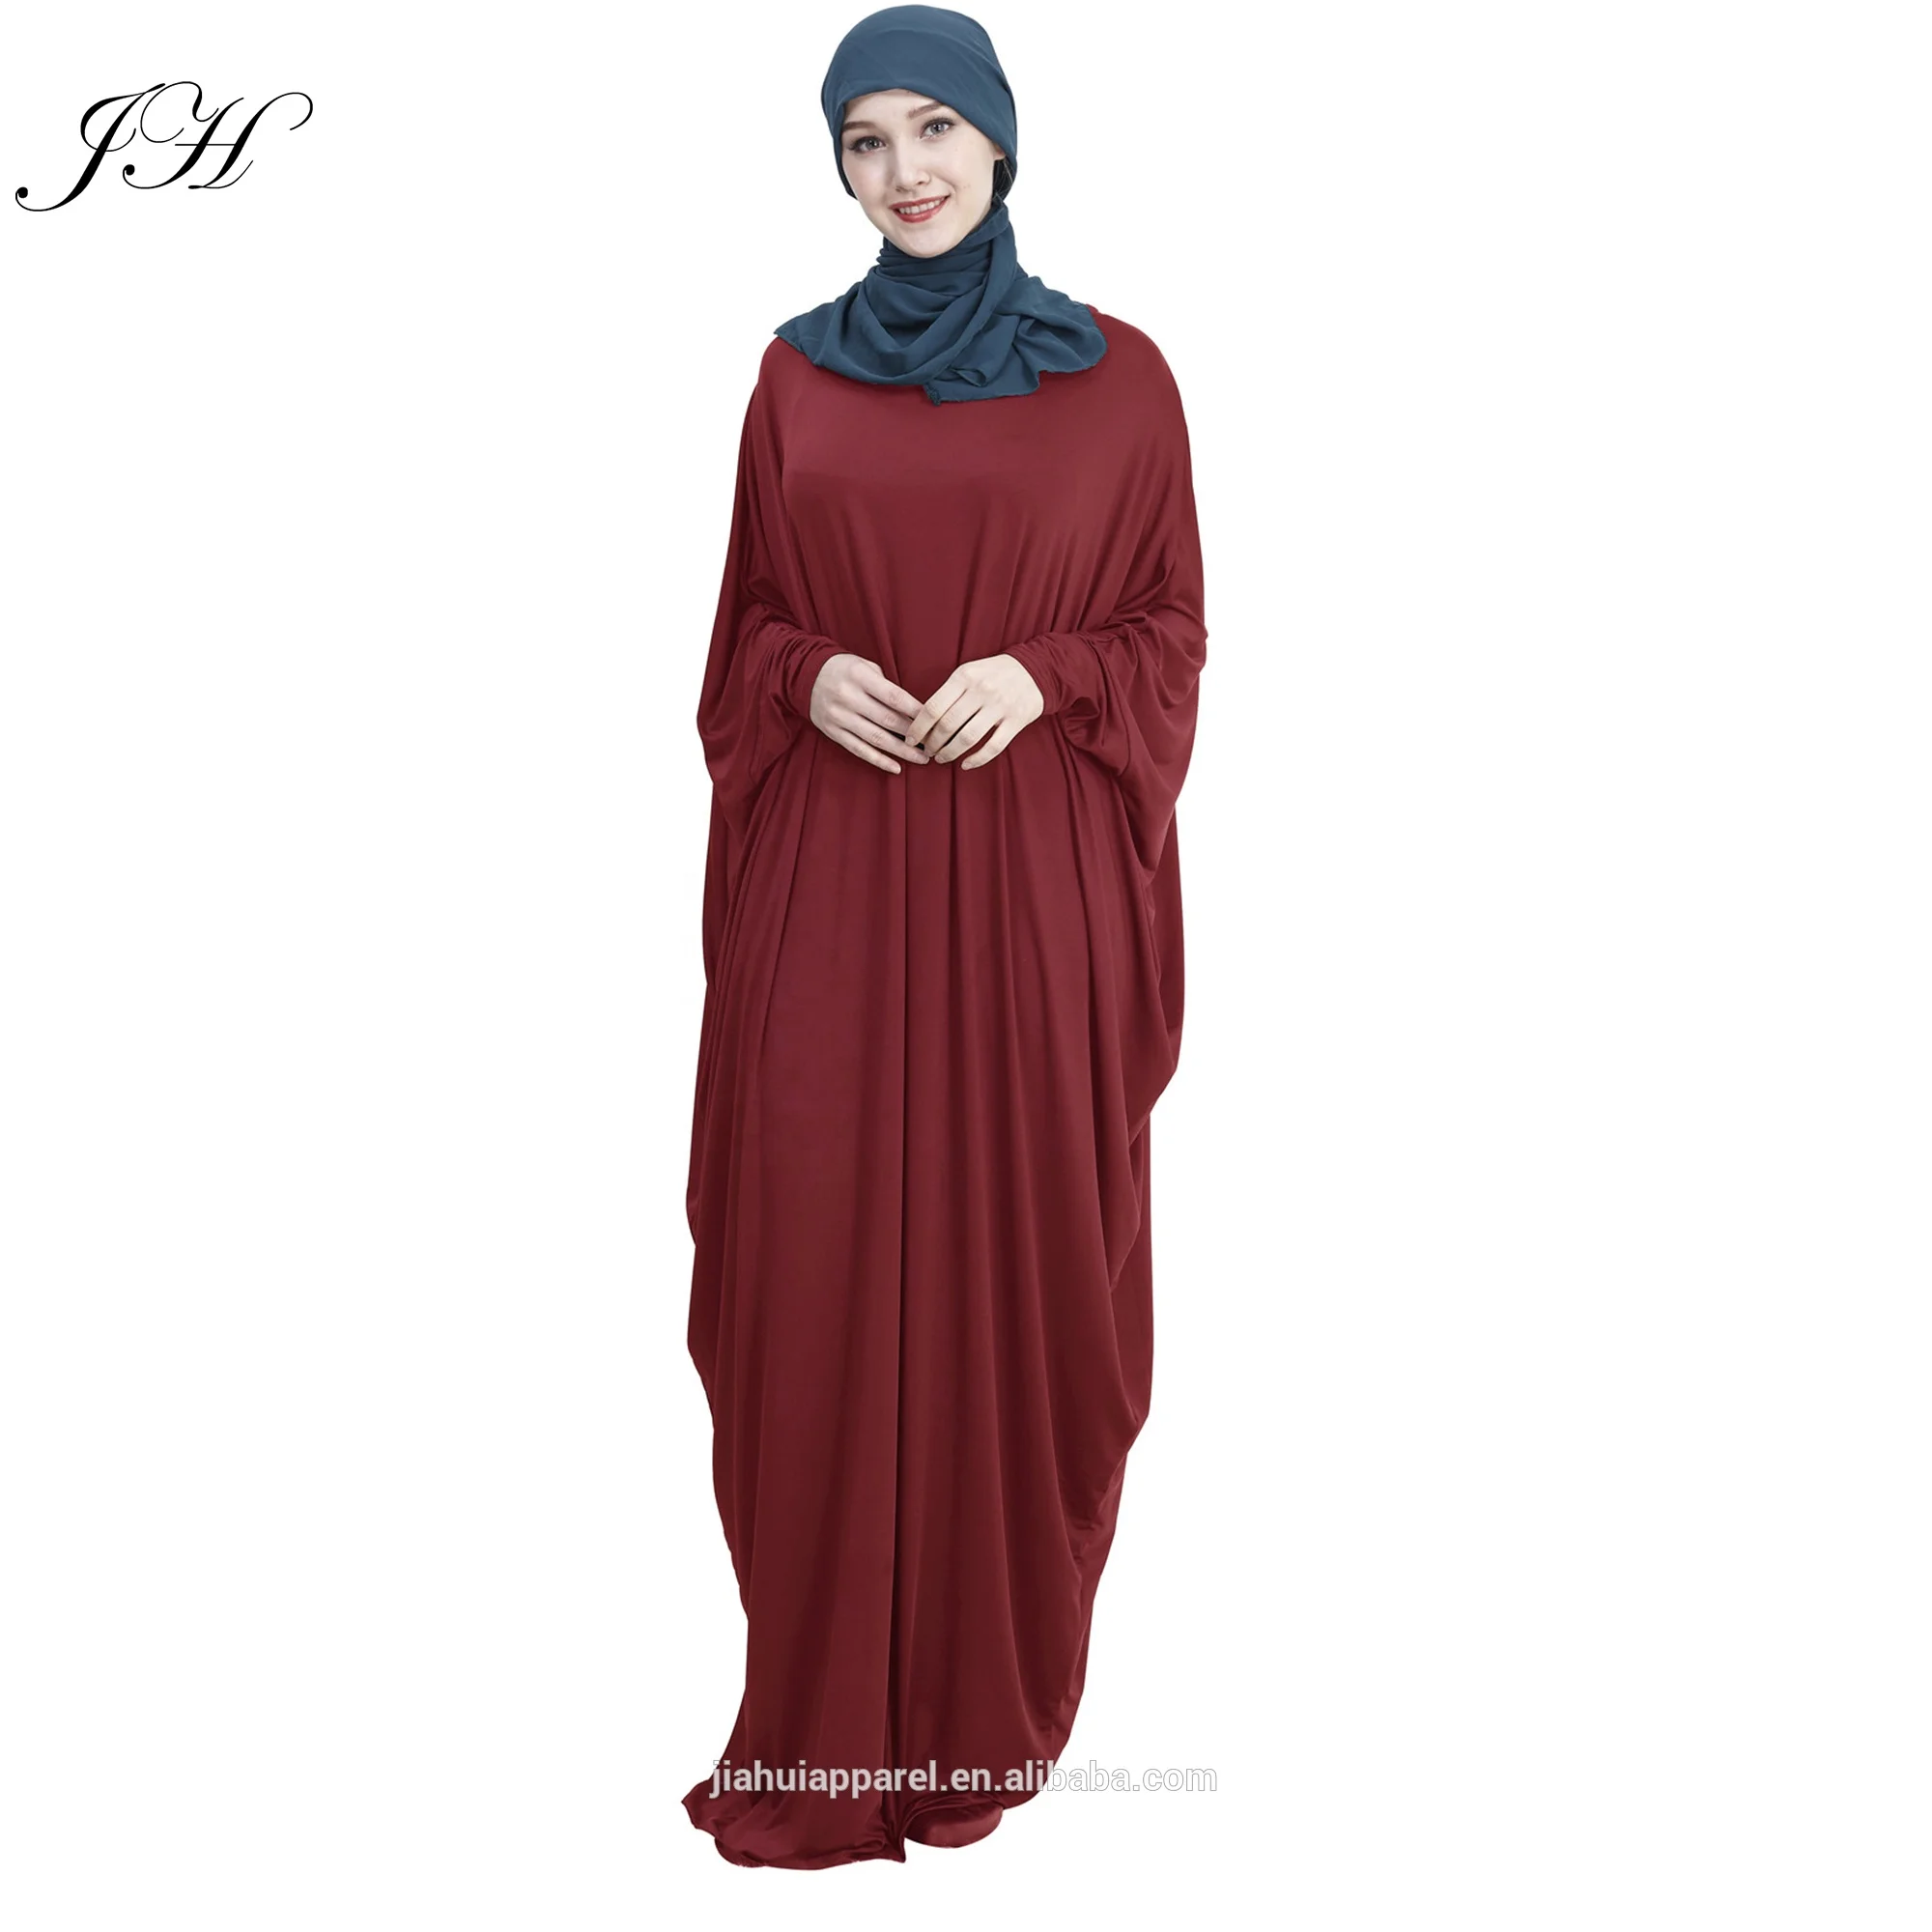 

2019 Casual Muslim Abaya Bat Sleeve Maxi Dress Loose Long Robe Gowns Ramadan Turkey Islamic Prayer, 14 colors